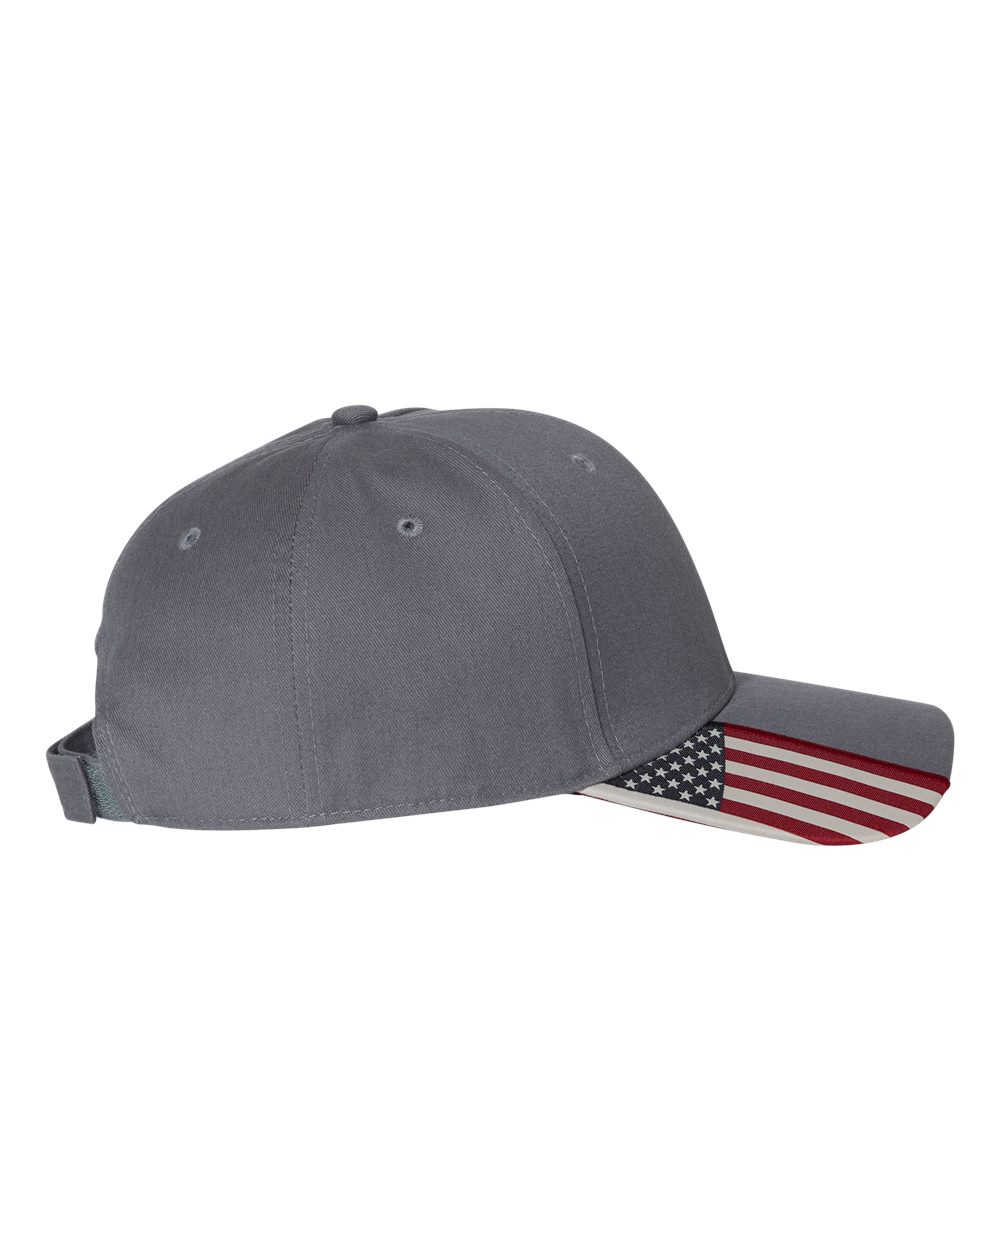 American Flag Cap - USA300-Outdoor Cap